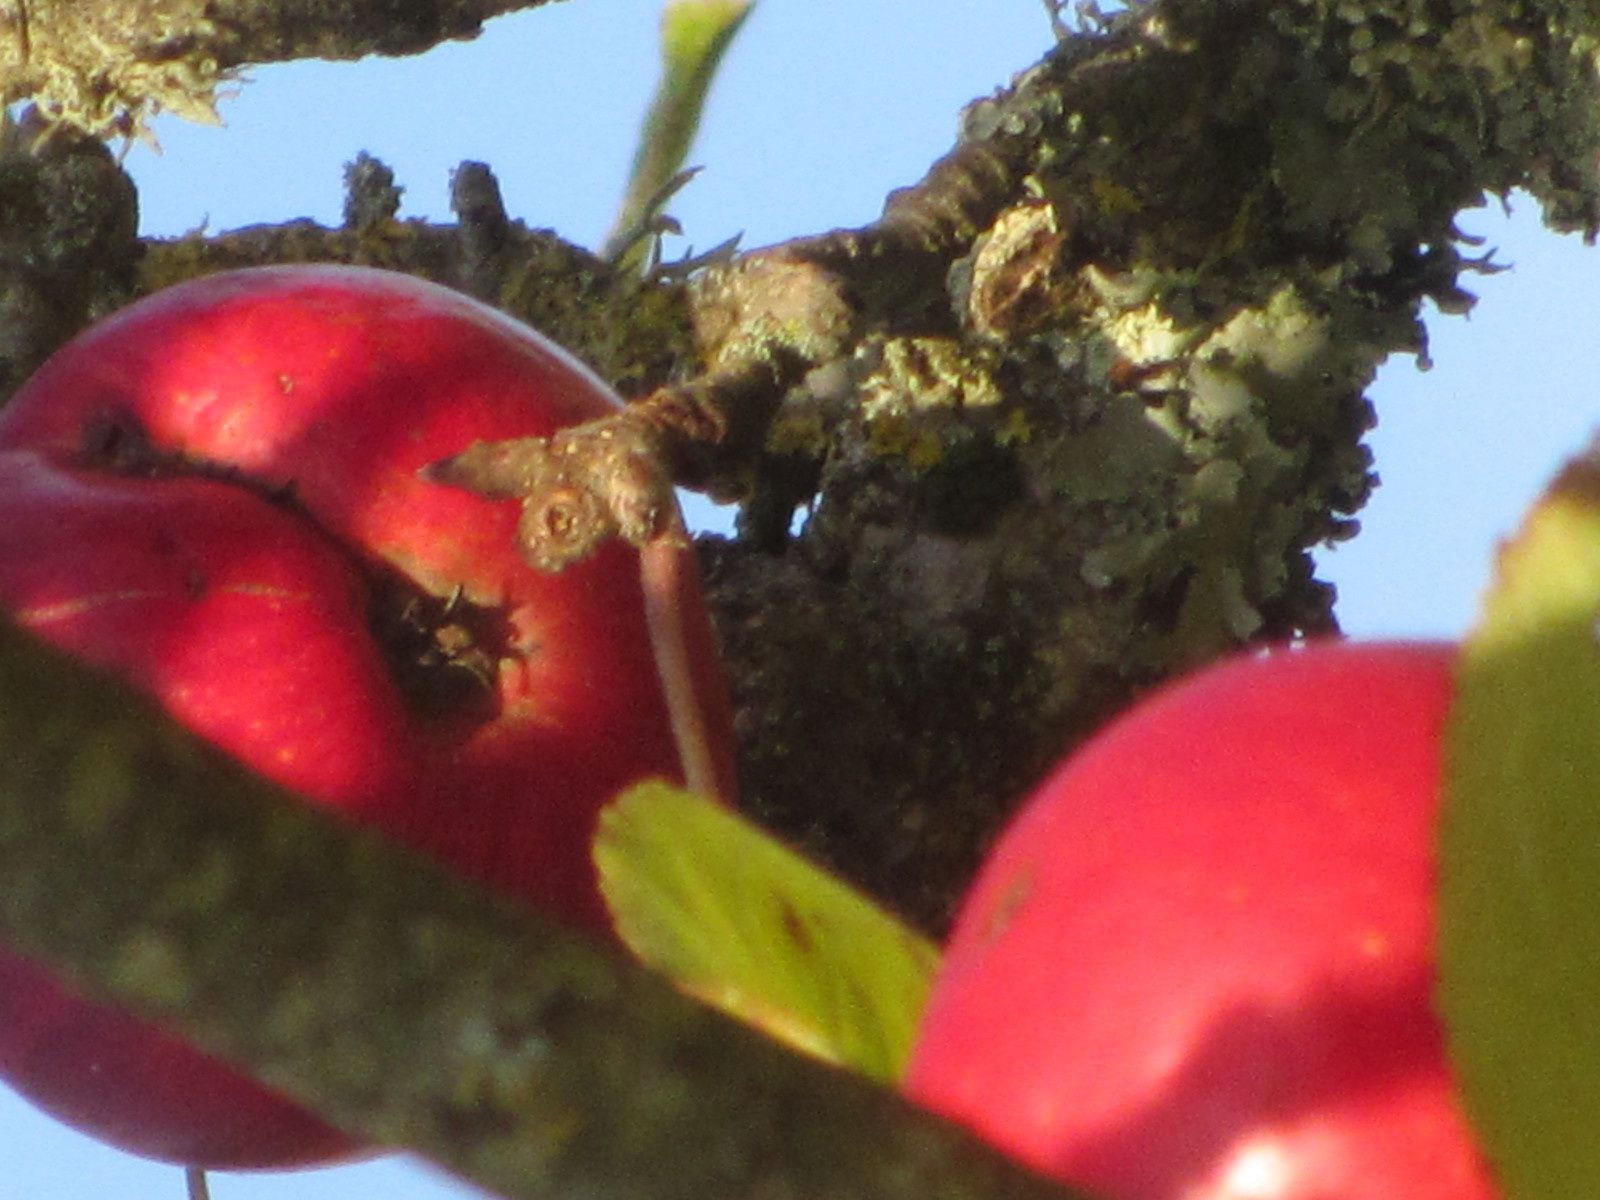 Les derniéres pommes attendent d'être récoltées.